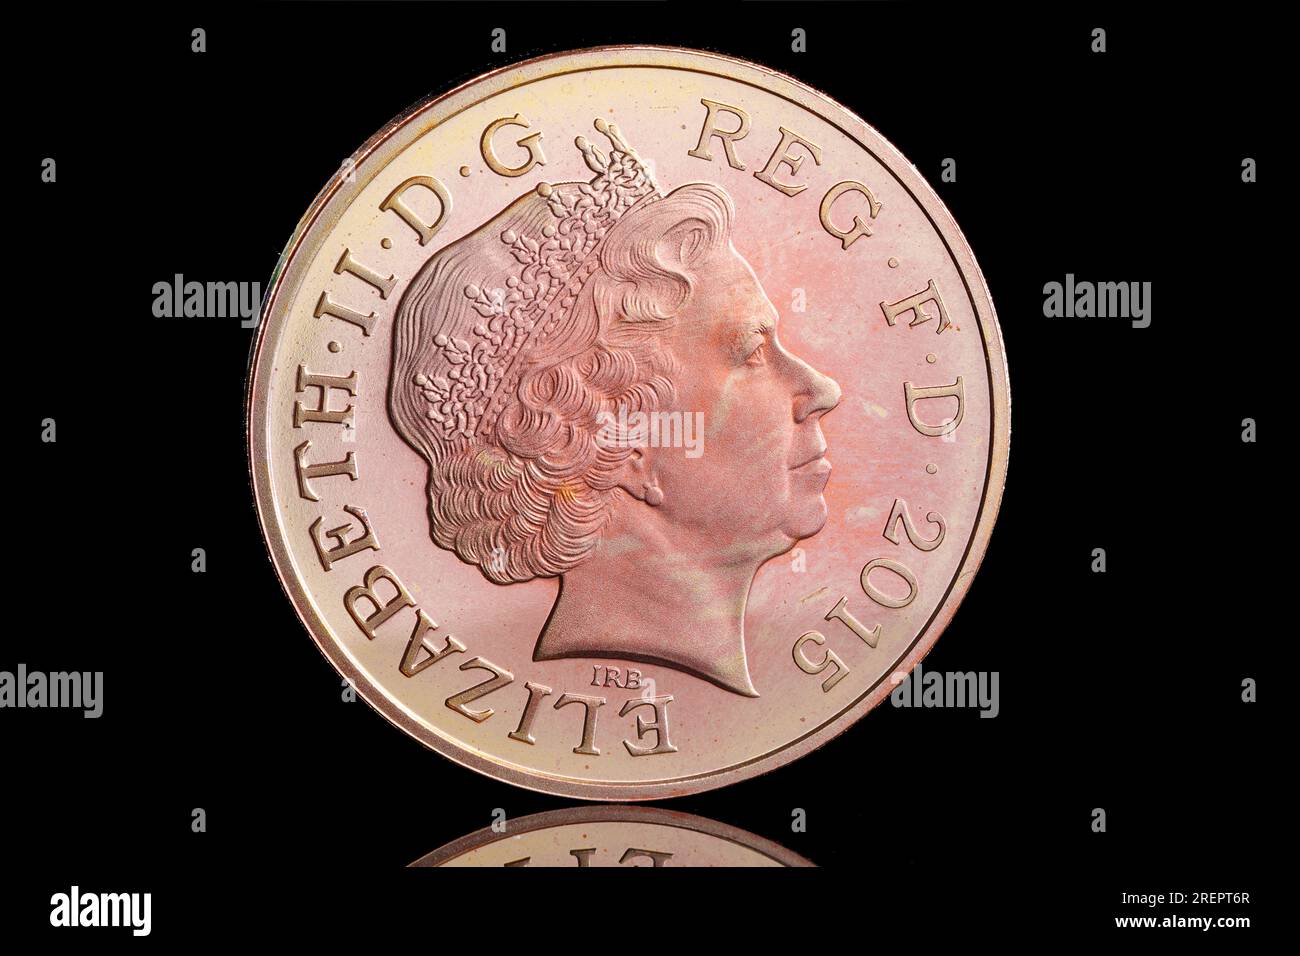 2015 2 pence avec le 4e portrait de la reine Elizabeth II par Ian Rank Broadley Banque D'Images